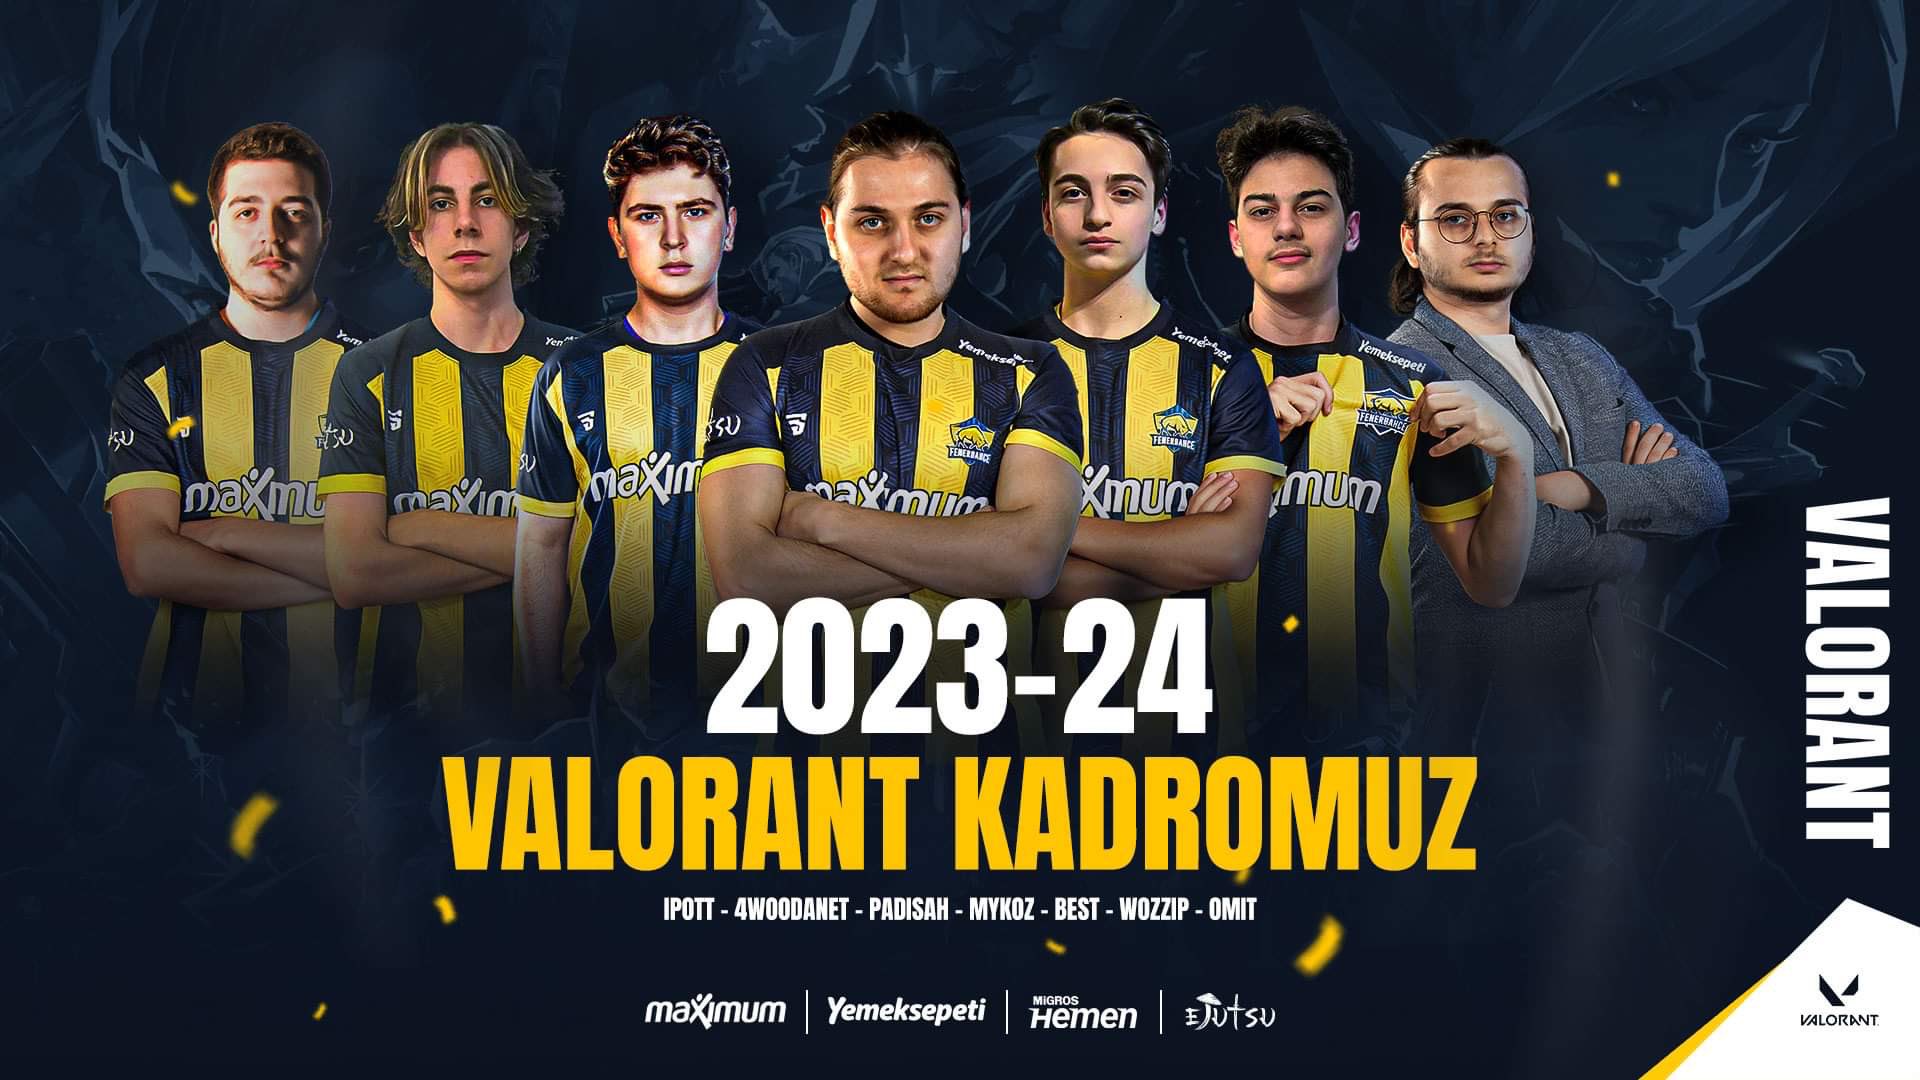 Fenerbahçe Espor'un yeni VALORANT kadrosu duyuruldu!